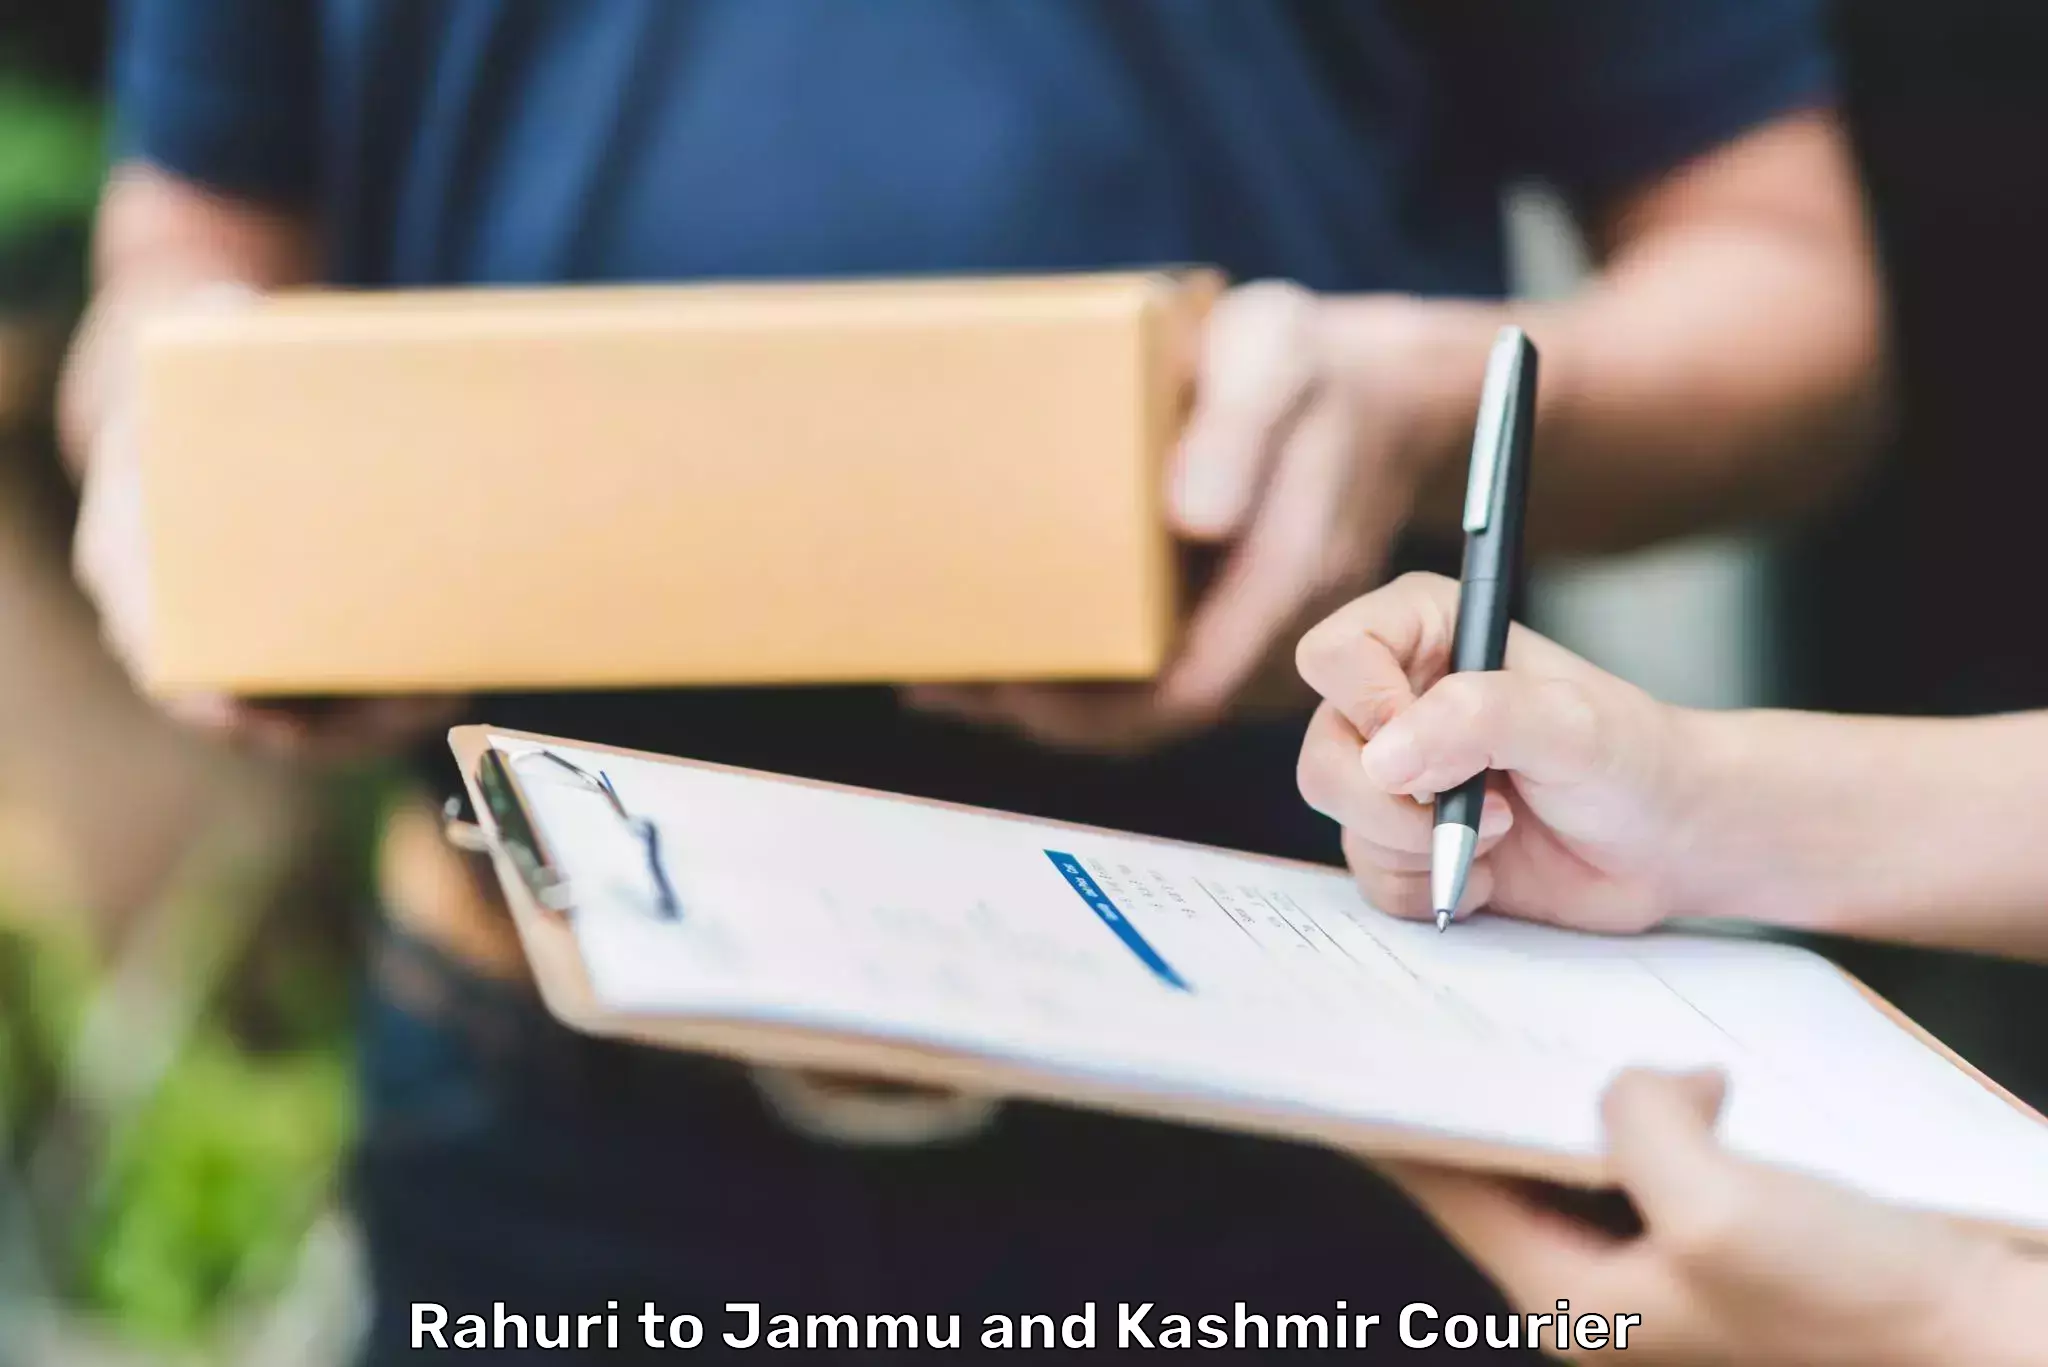 Seamless shipping experience Rahuri to Rajouri